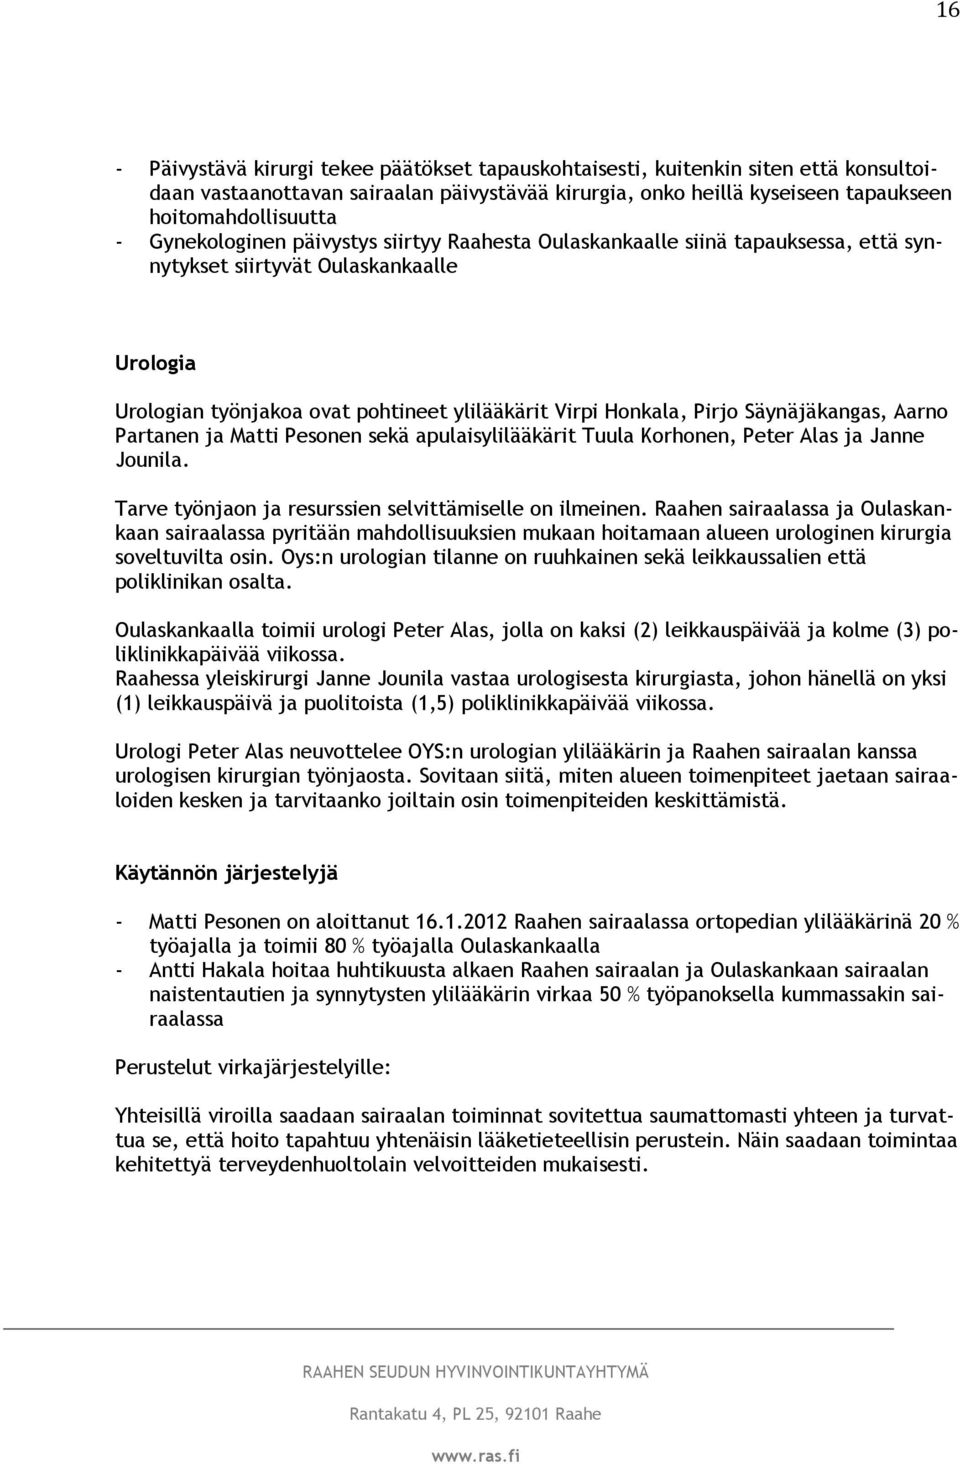 Säynäjäkangas, Aarno Partanen ja Matti Pesonen sekä apulaisylilääkärit Tuula Korhonen, Peter Alas ja Janne Jounila. Tarve työnjaon ja resurssien selvittämiselle on ilmeinen.